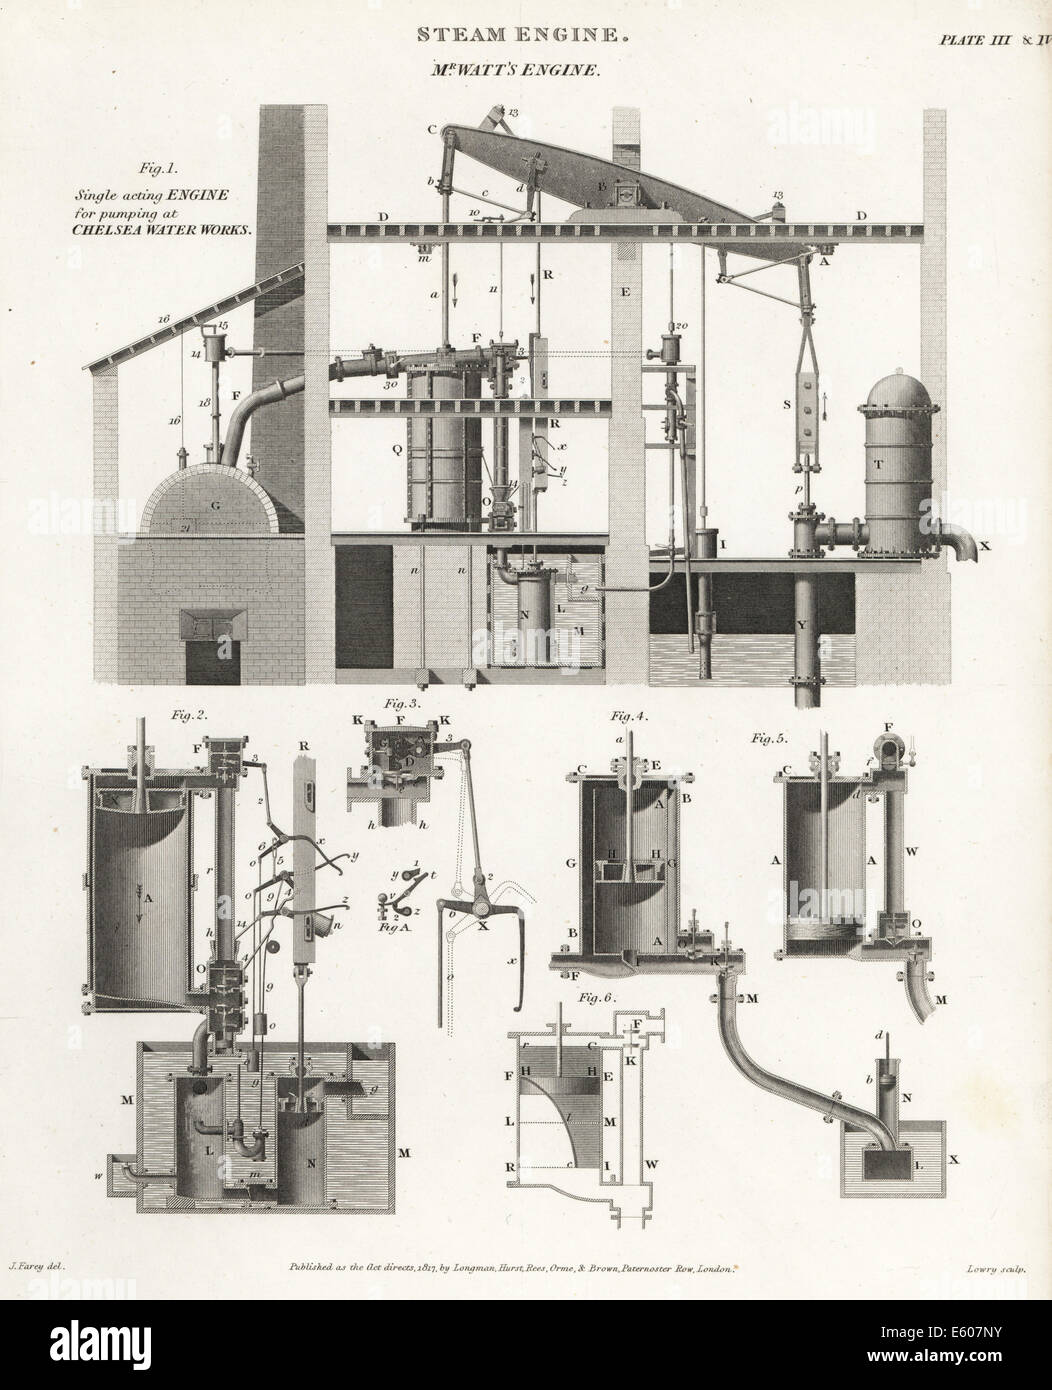 James Watt il motore a vapore per il pompaggio di Chelsea opere idriche, XVIII secolo. Foto Stock